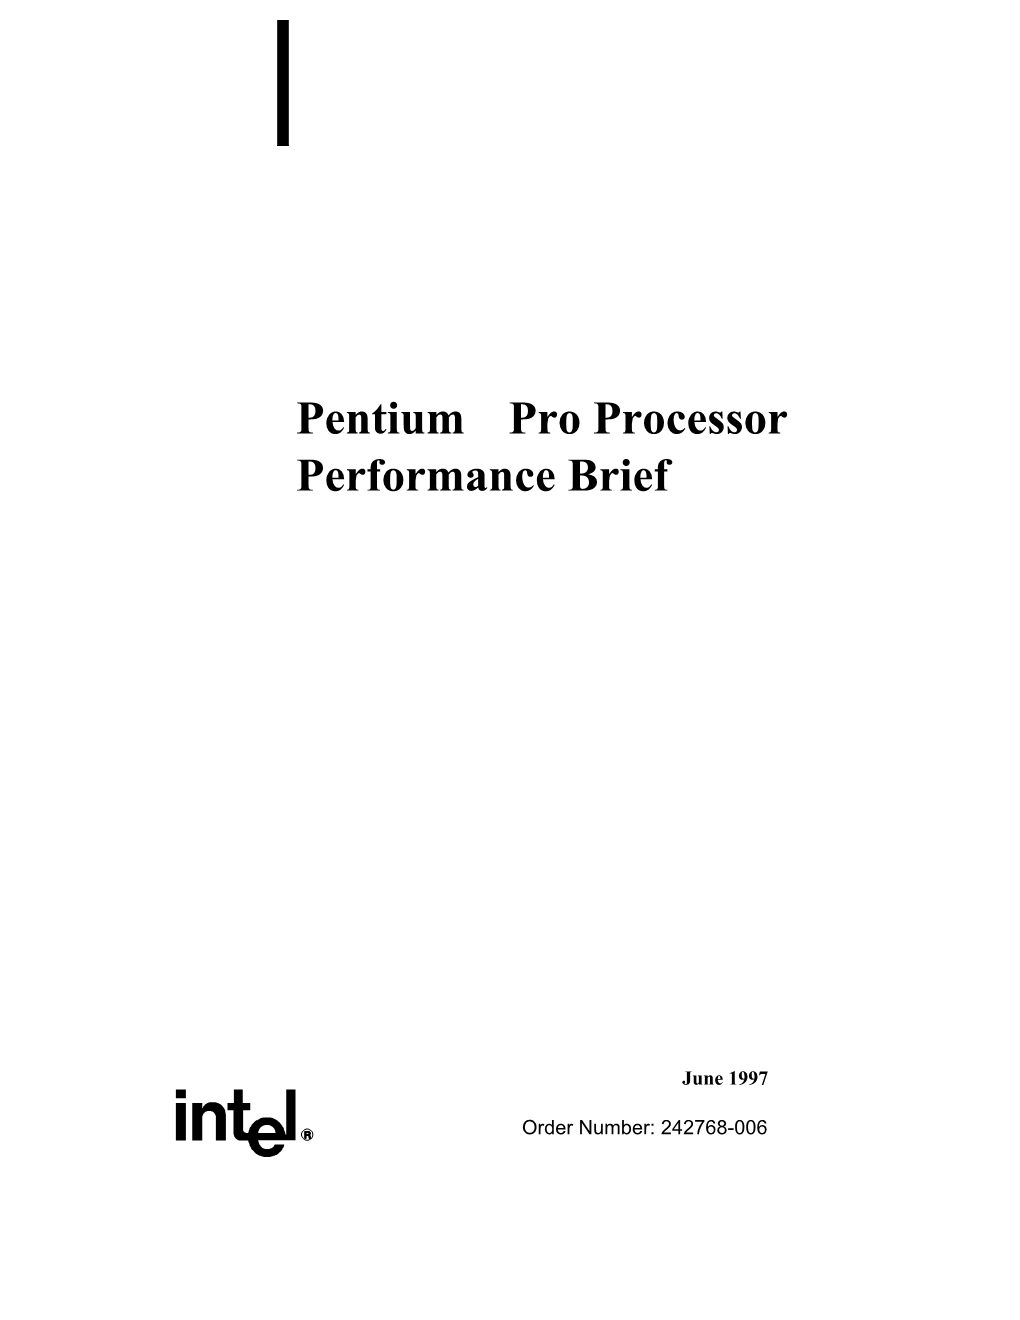 The Intel Pentium® Pro Processor